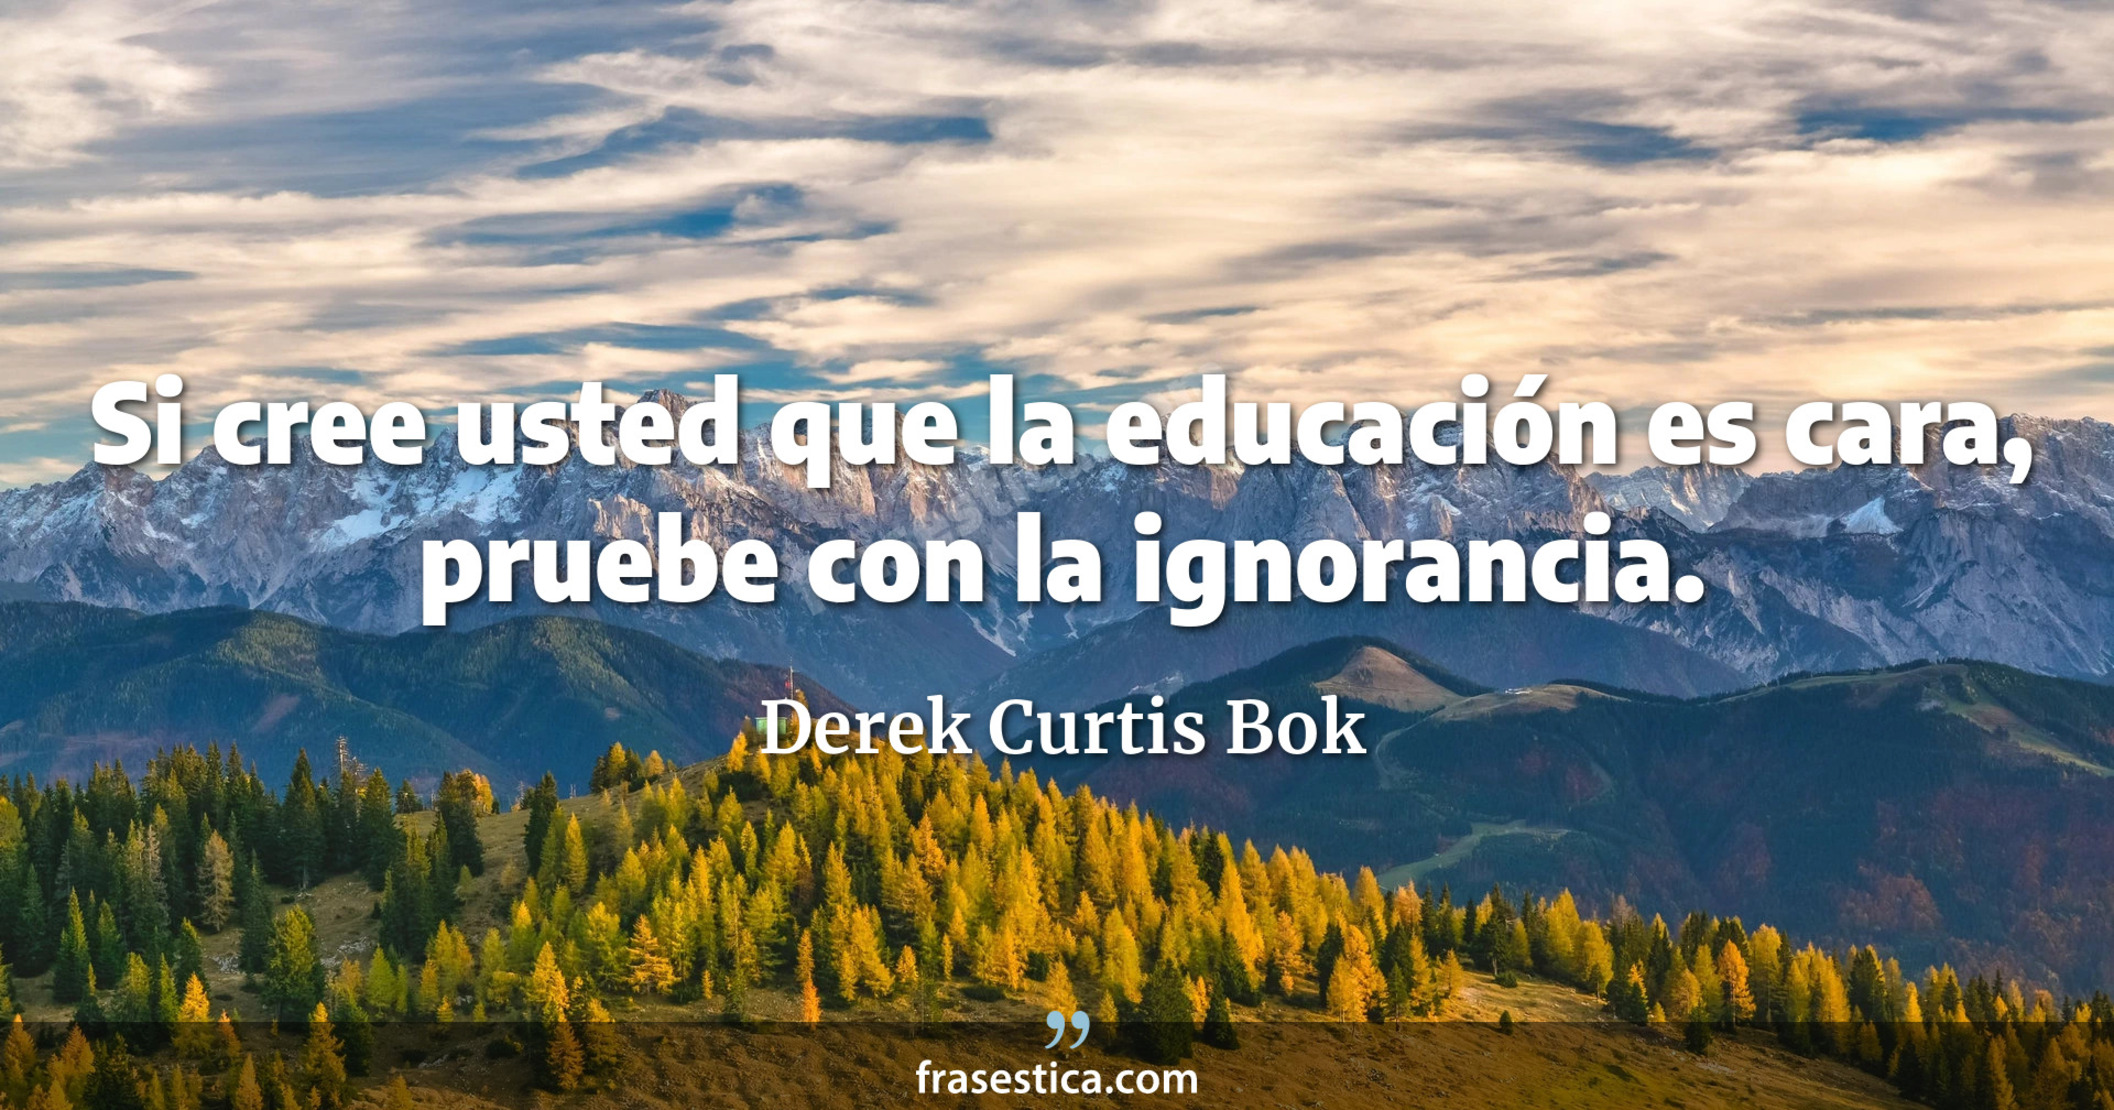 Si cree usted que la educación es cara, pruebe con la ignorancia. - Derek Curtis Bok